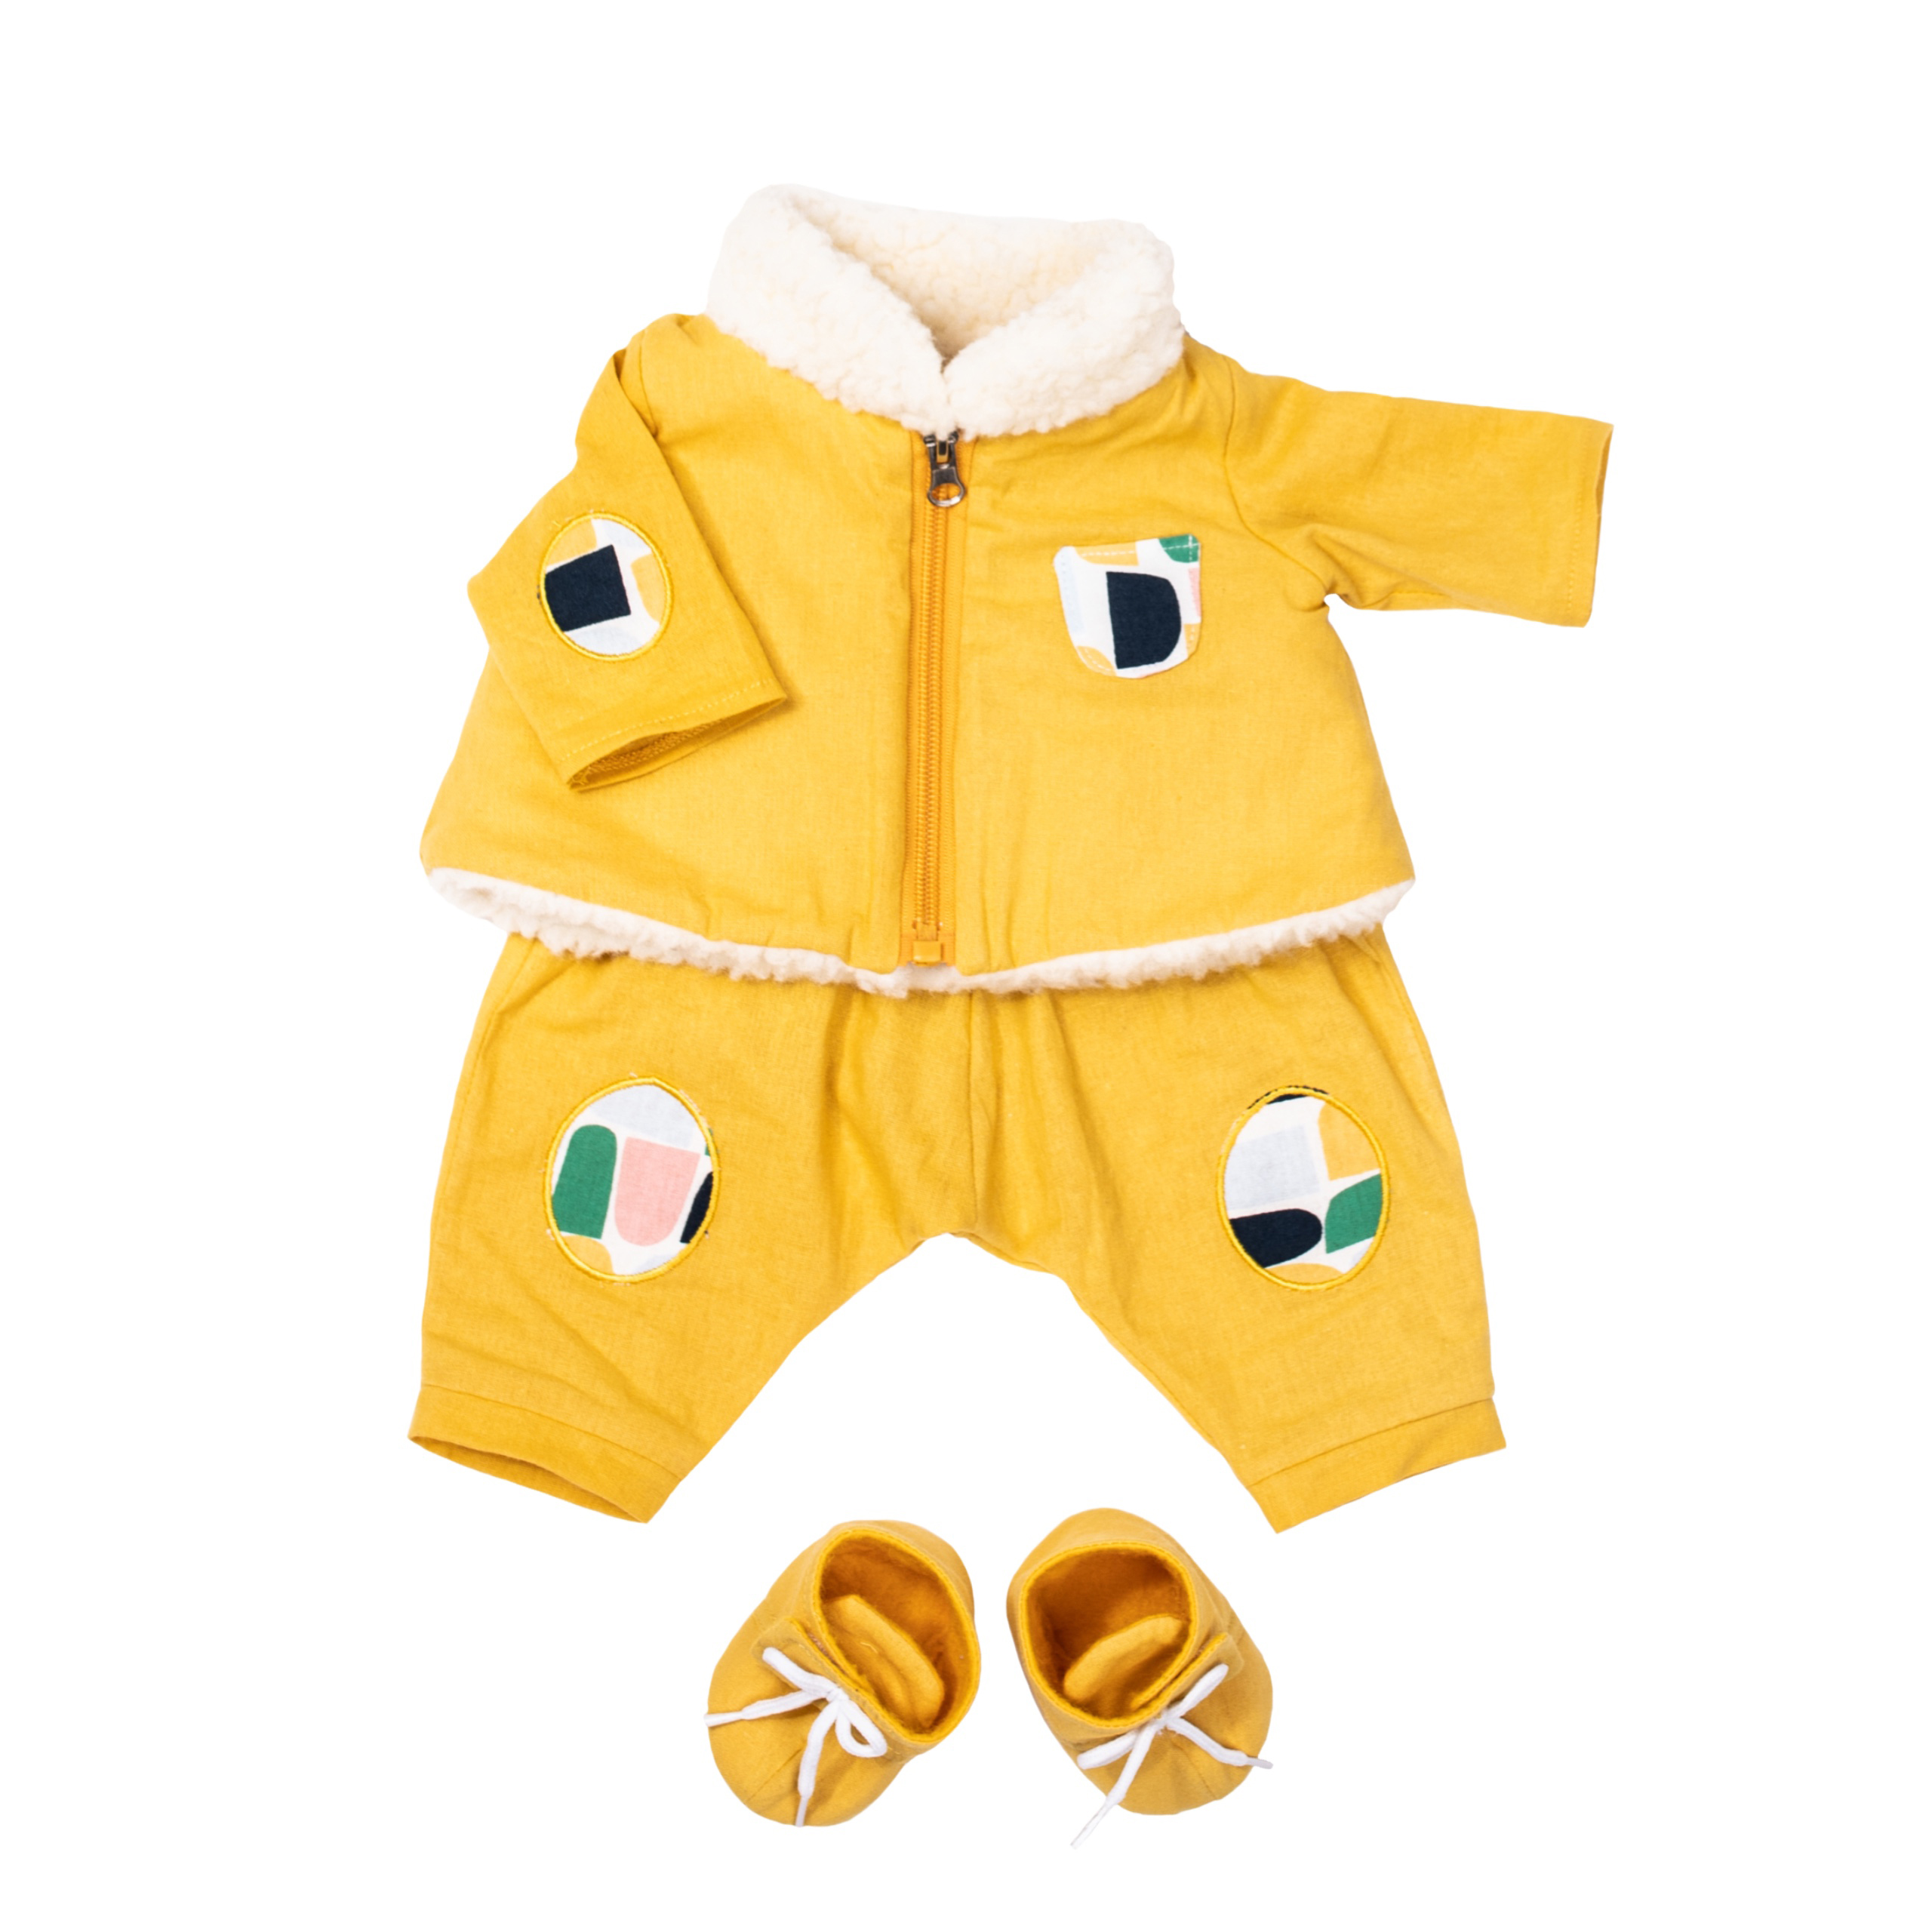 Dockor & Docktillbehör rubens barn dockkläder utomhuskläder baby